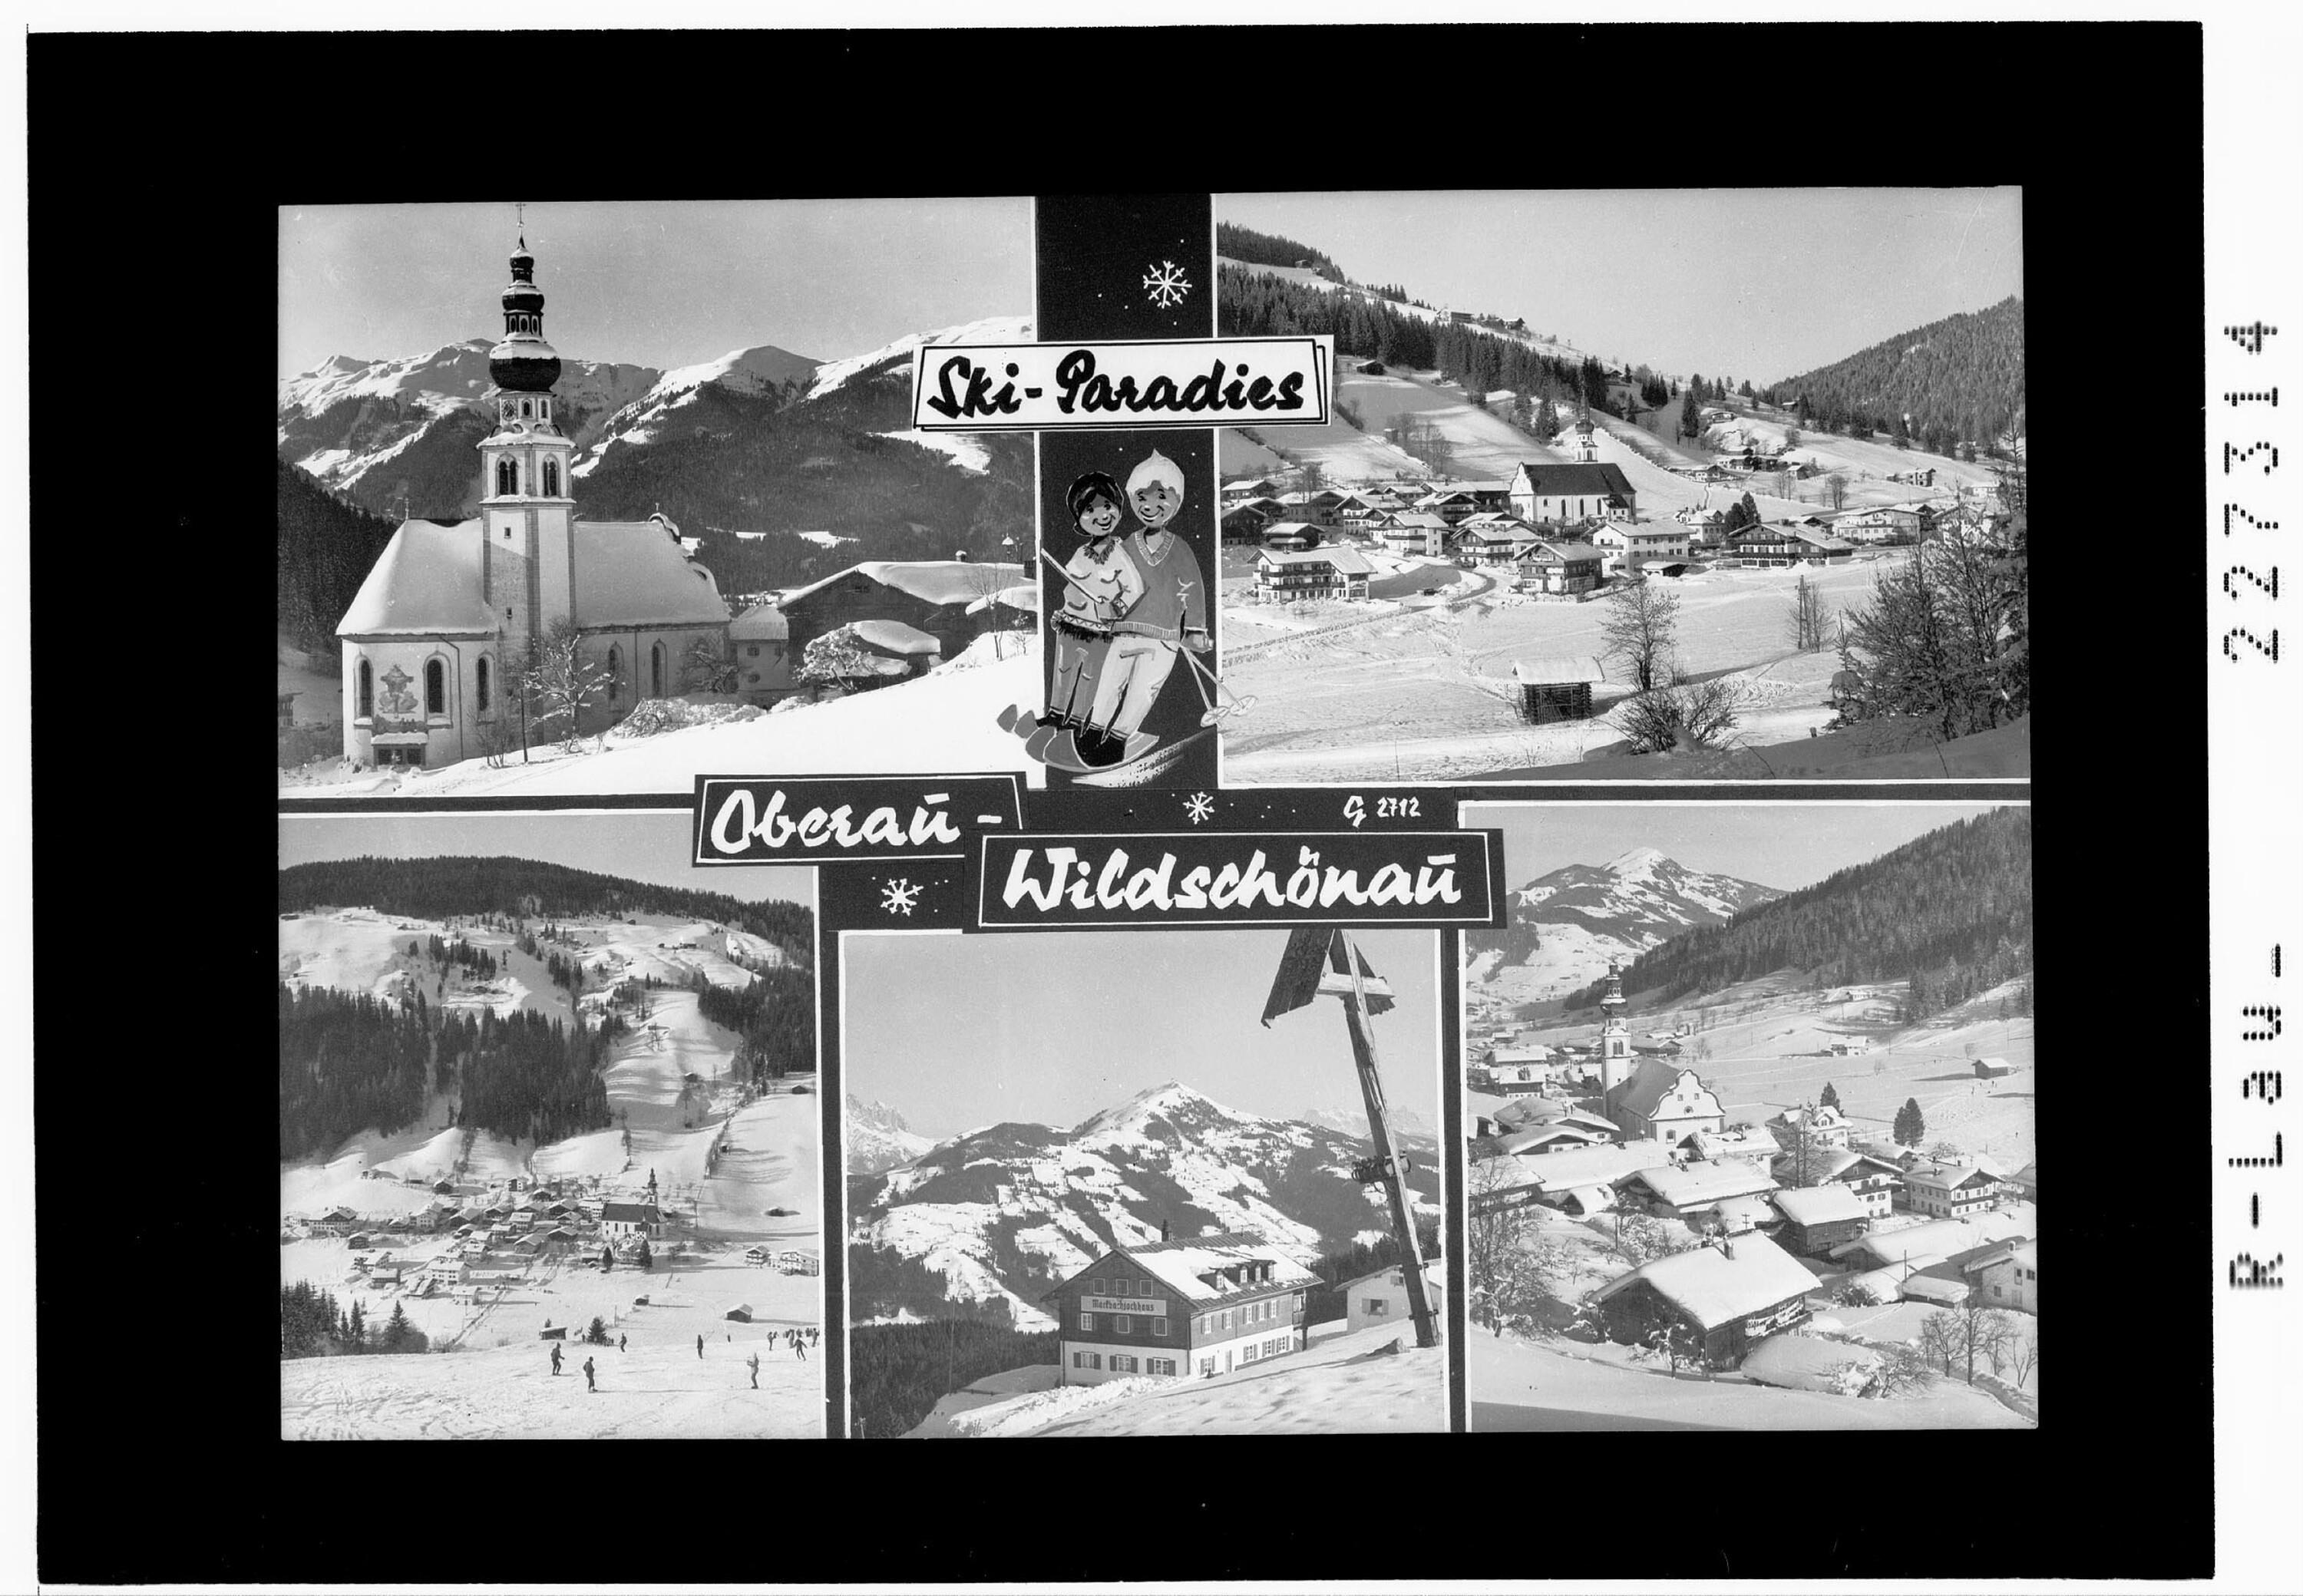 Skiparadies Oberau - Wildschönau></div>


    <hr>
    <div class=